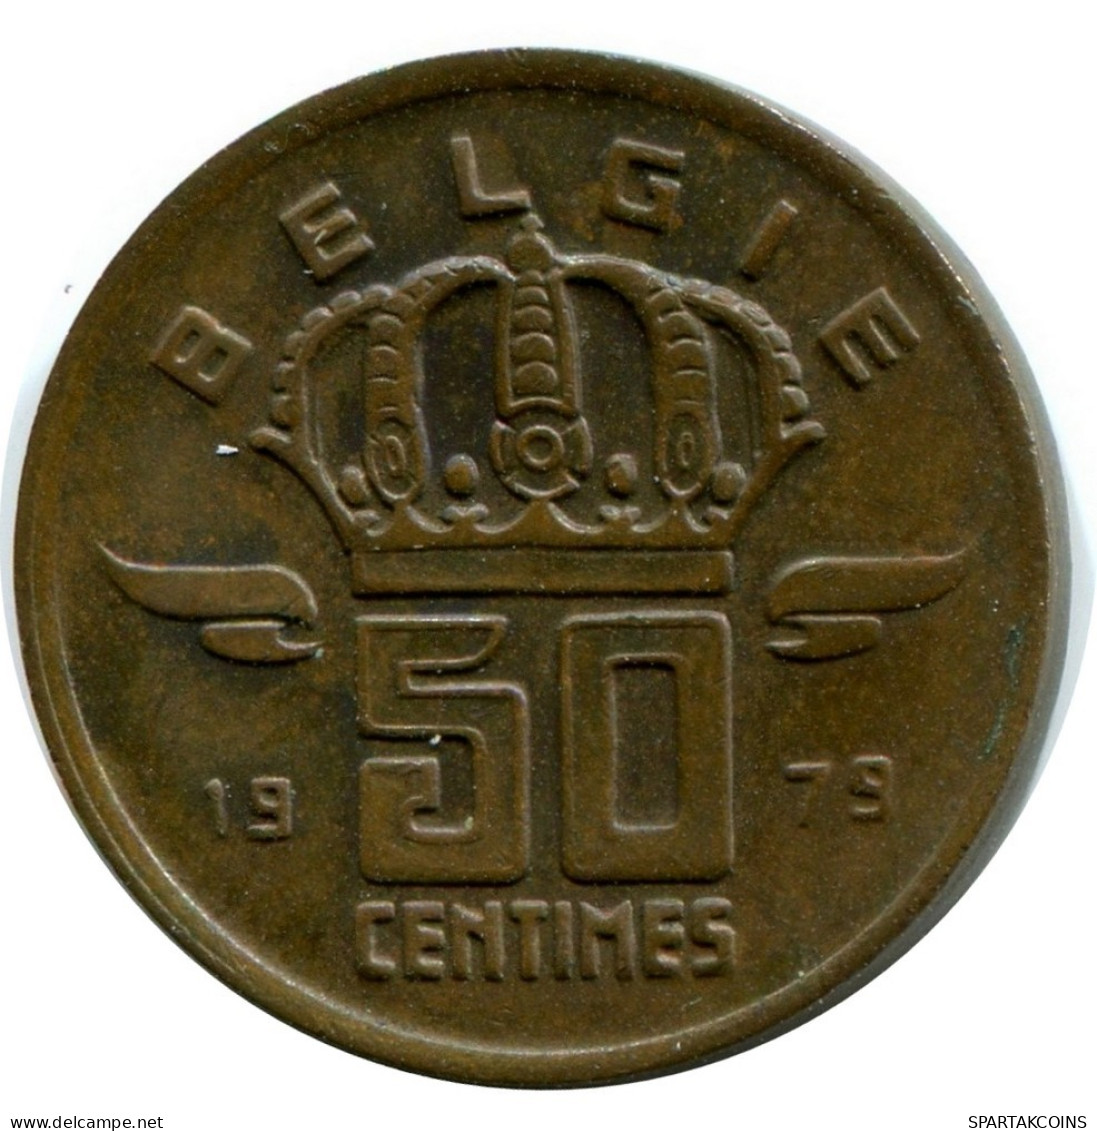 50 CENTIMES 1979 DUTCH Text BELGIUM Coin #AW925.U.A - 50 Centimes